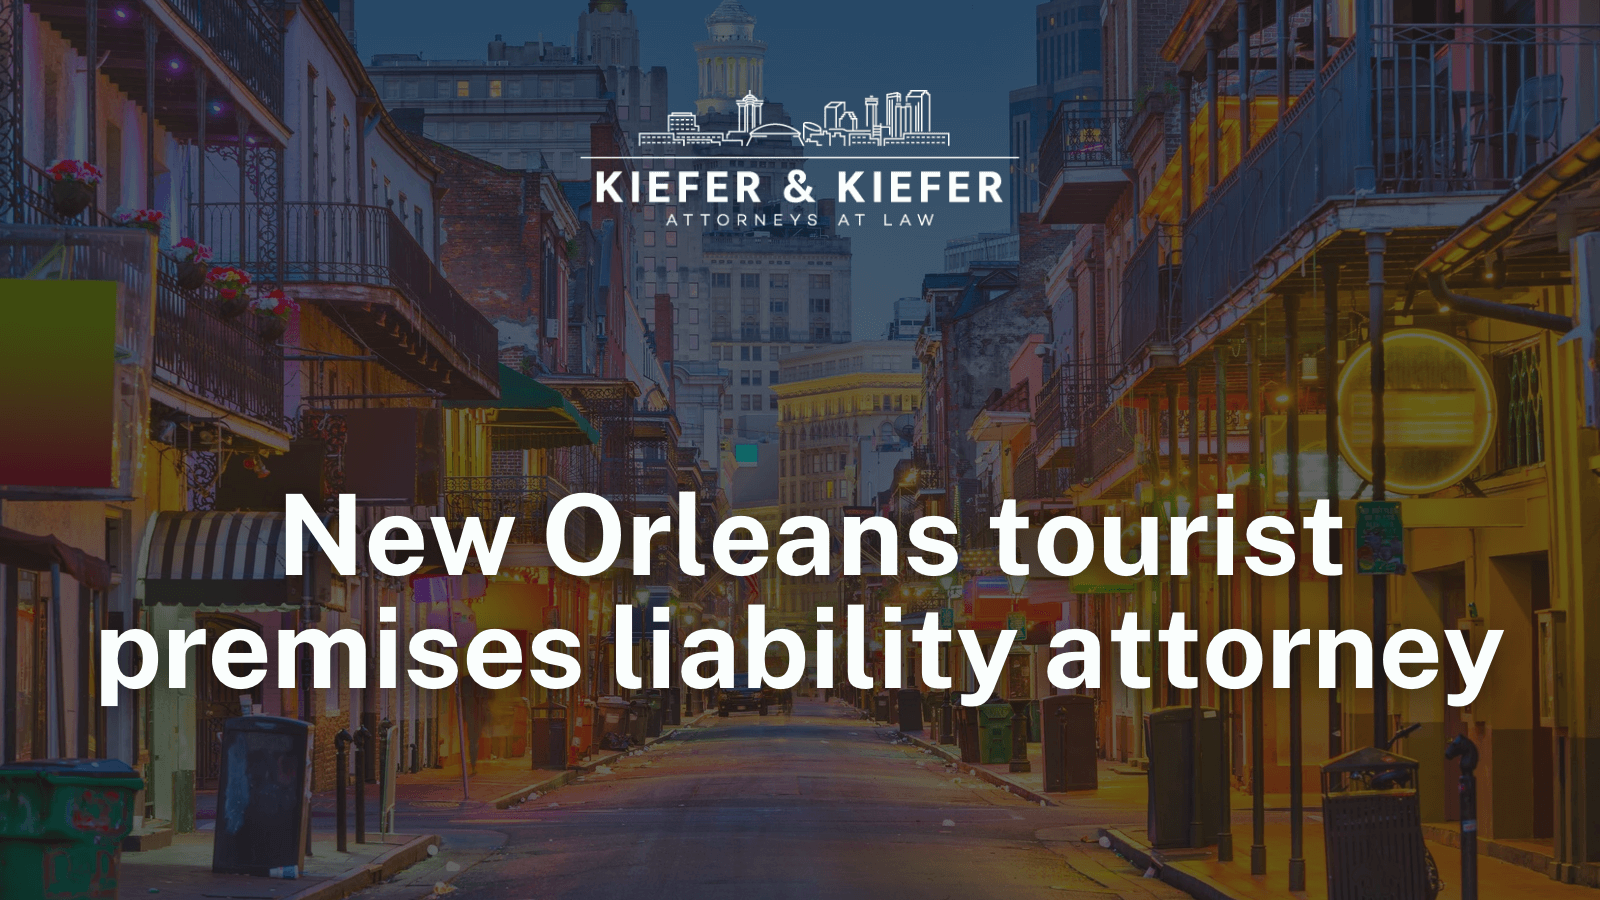 New Orleans tourist premises liability attorney - Kiefer & Kiefer New Orleans Personal Injury Attorneys